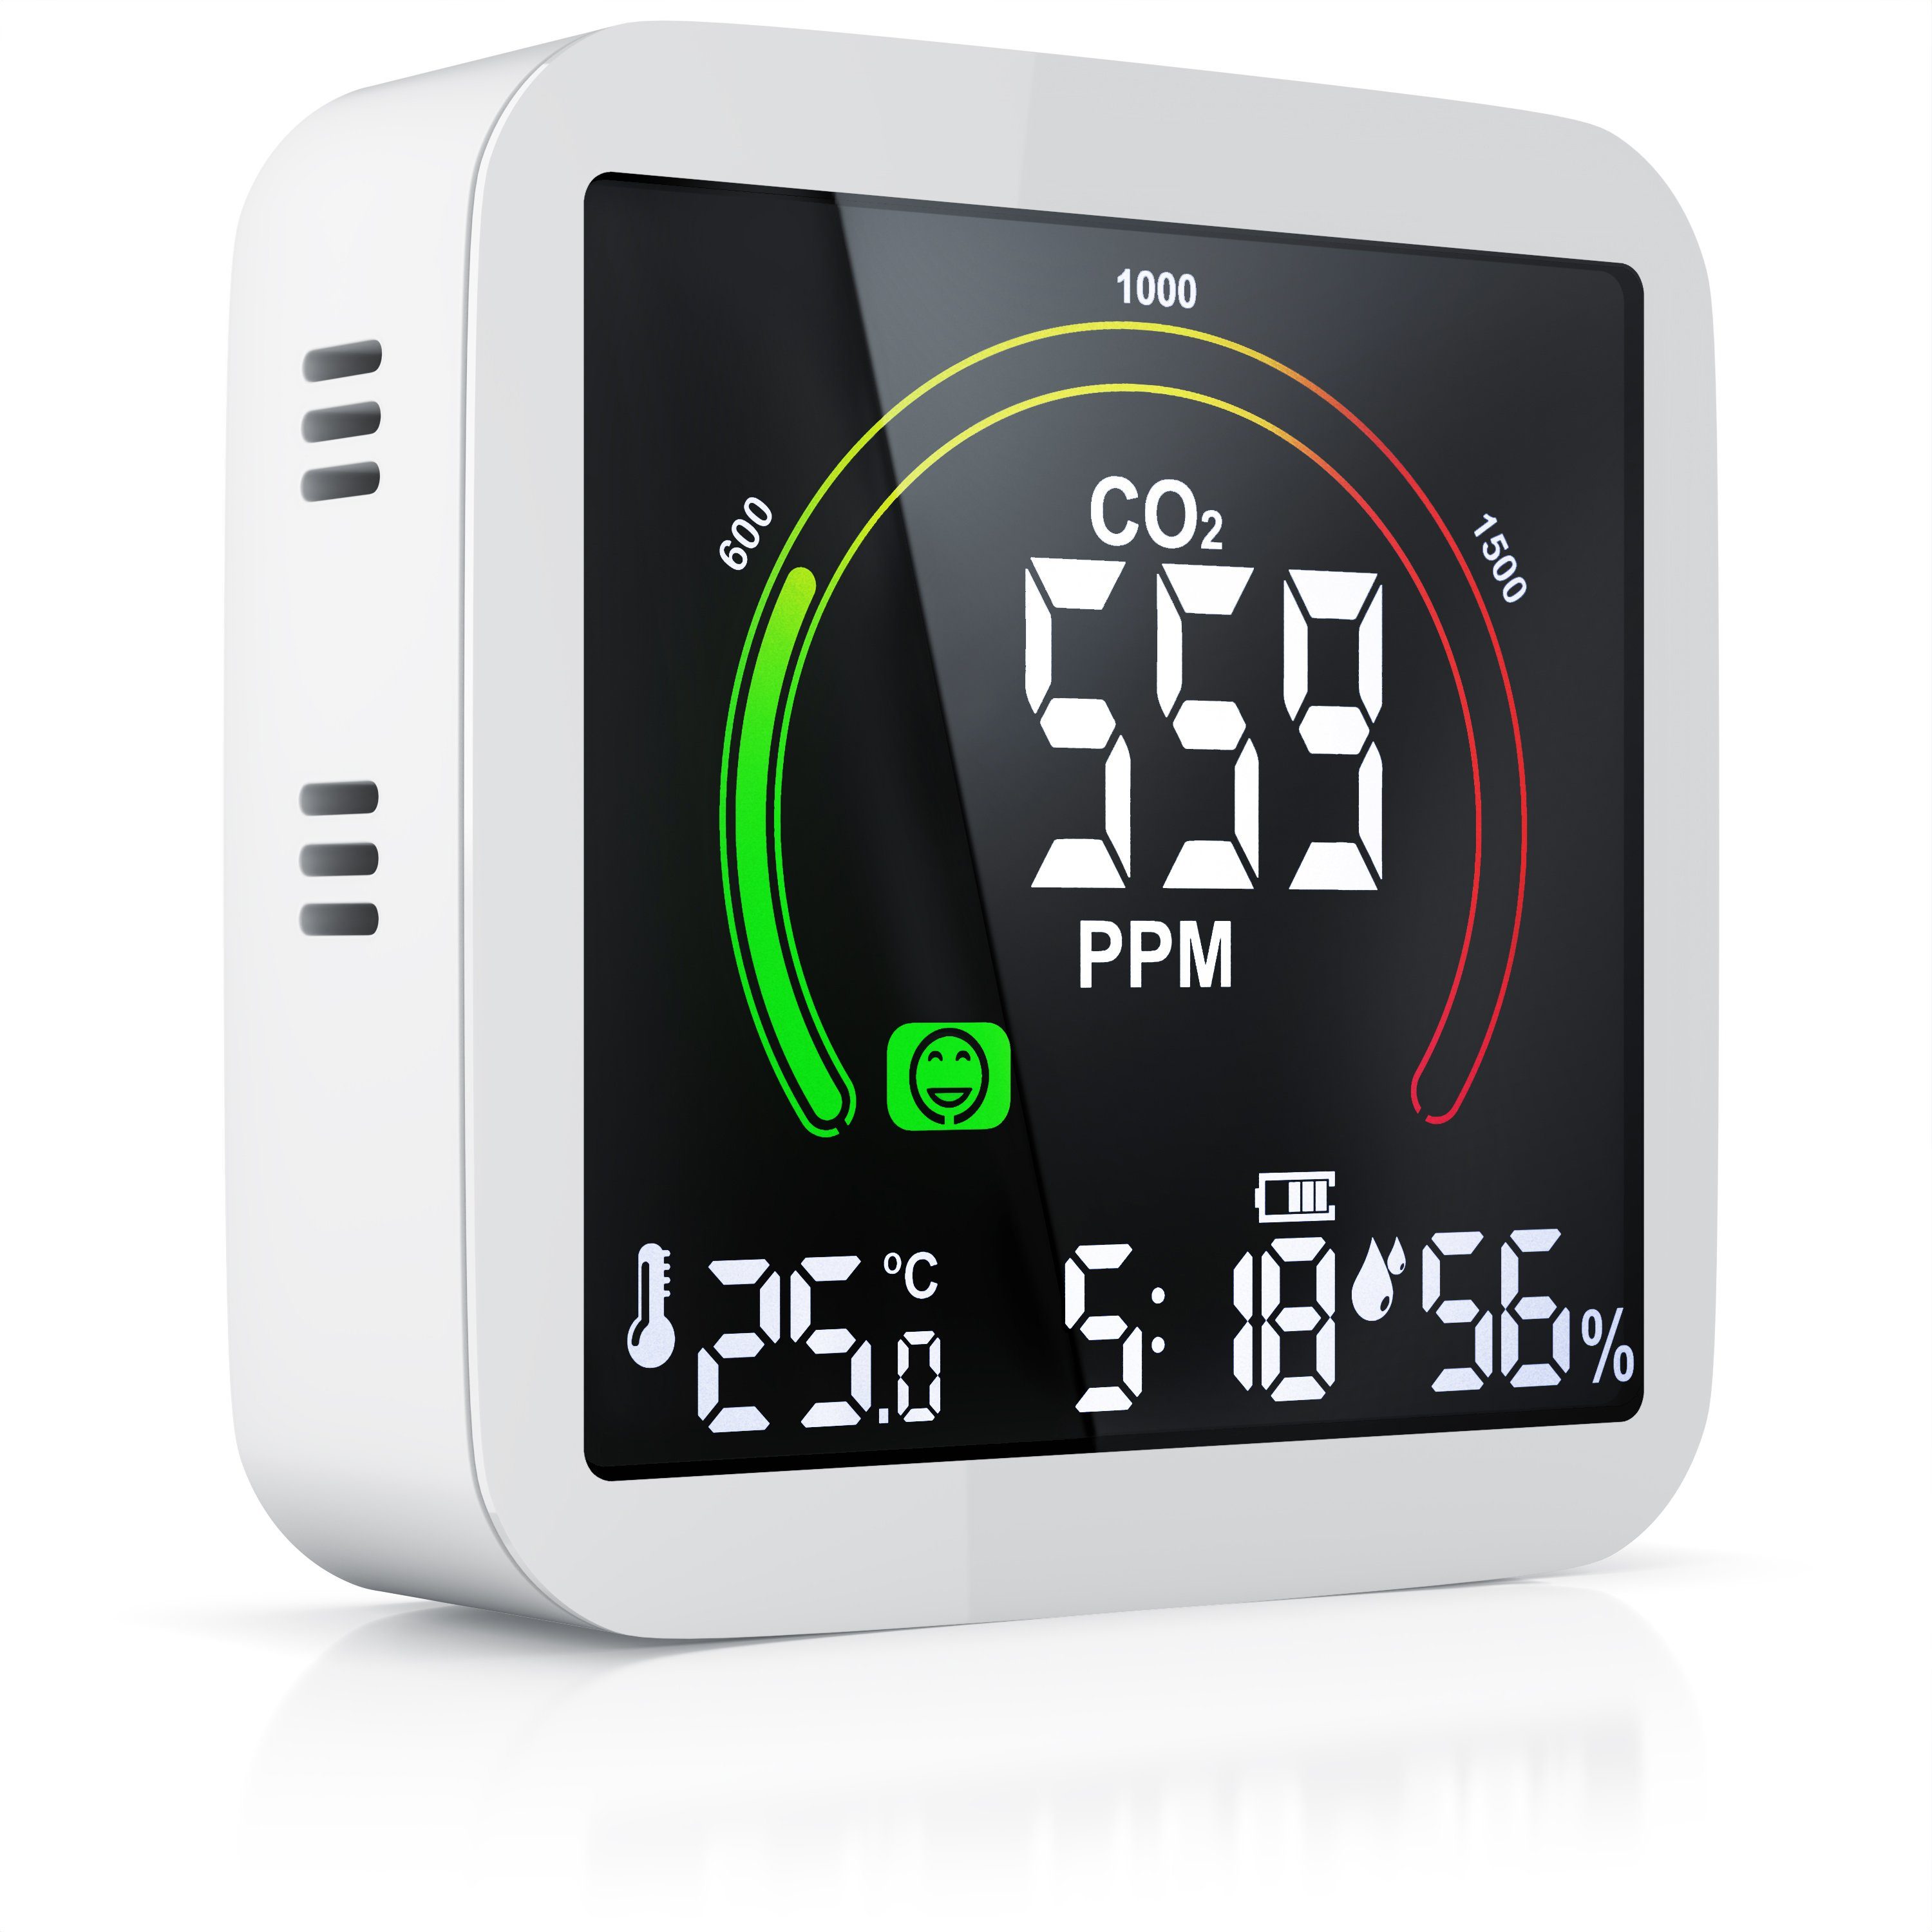 Brandson CO2 Messgerät, Luftqualität Melder, Kohlendioxidmessung, Warnmelder Gasmelder (Wecker, Temperatur, Uhrzeit, Luftfeuchtigkeit - eingebauter Akku)